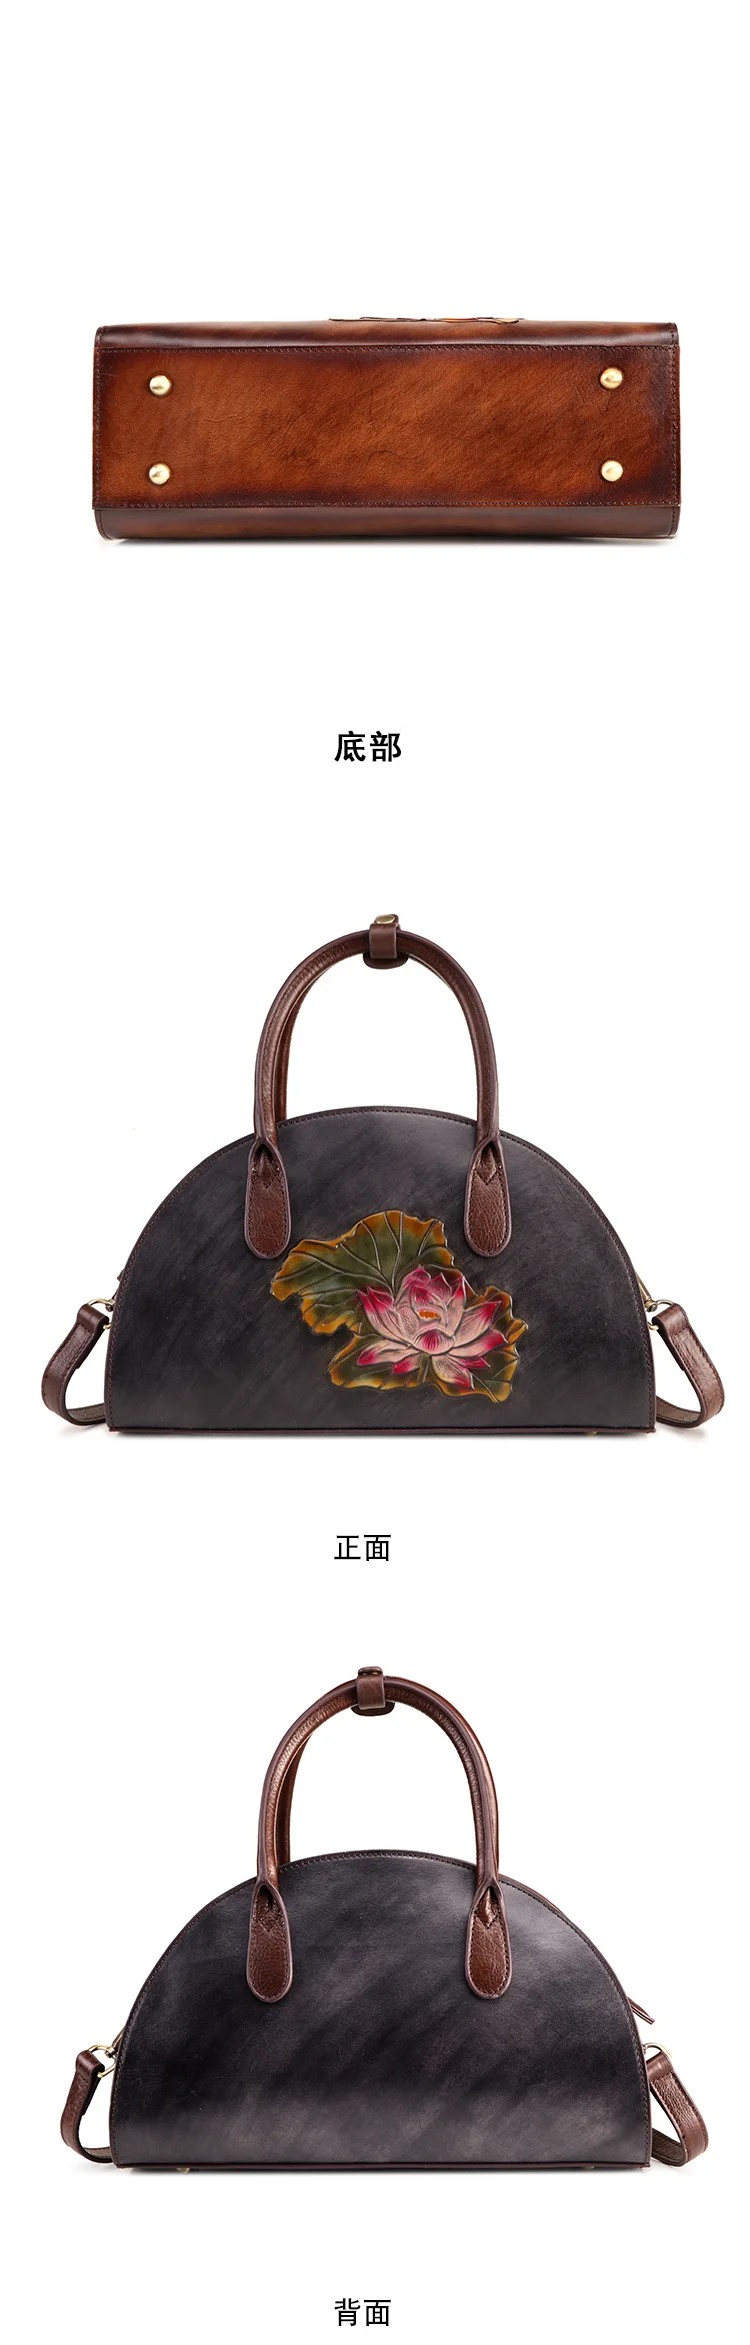 Высококачественная сумка через плечо женская сумка с рисунком лотоса в китайском стиле винтажные женские сумки-почтальонки из натуральной кожи